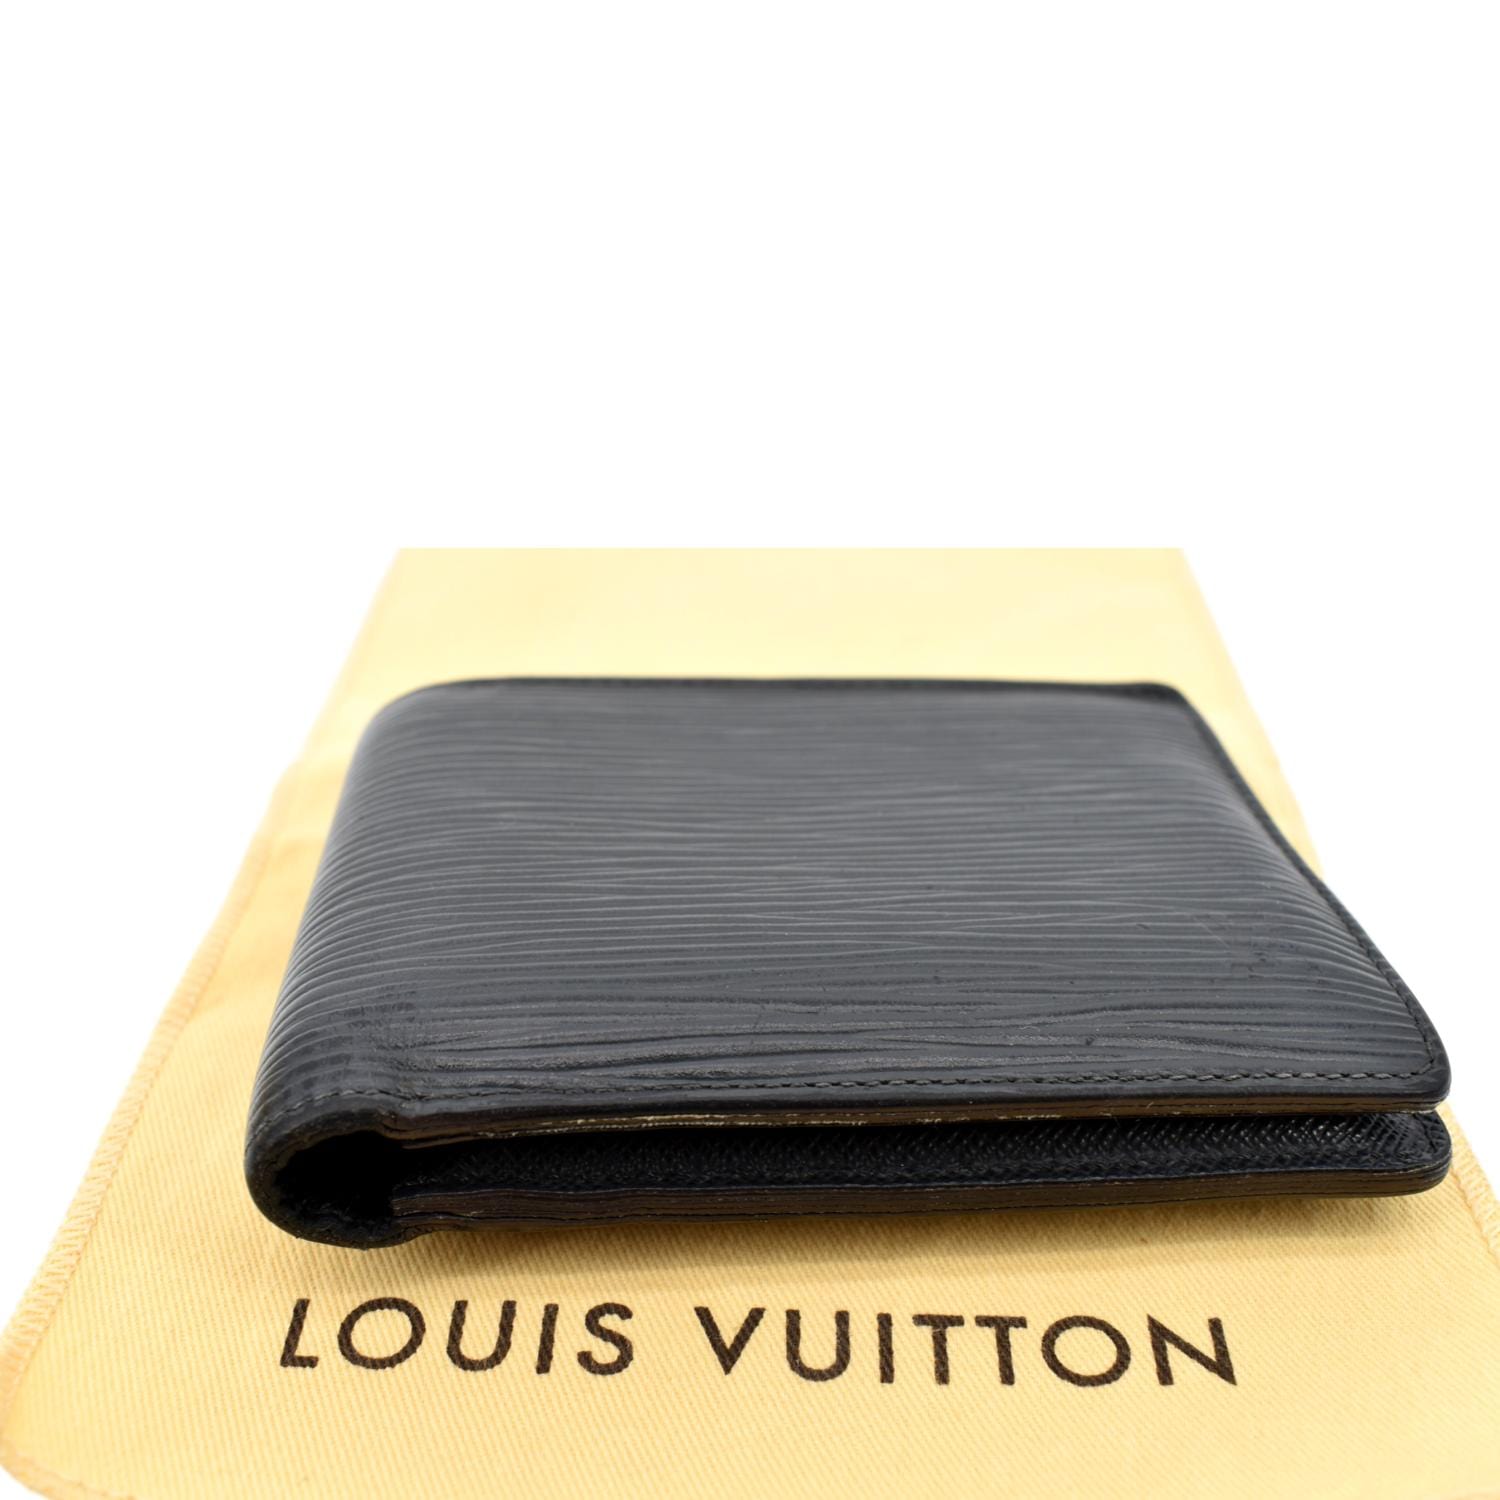 Louis Vuitton Insert - Multi on White